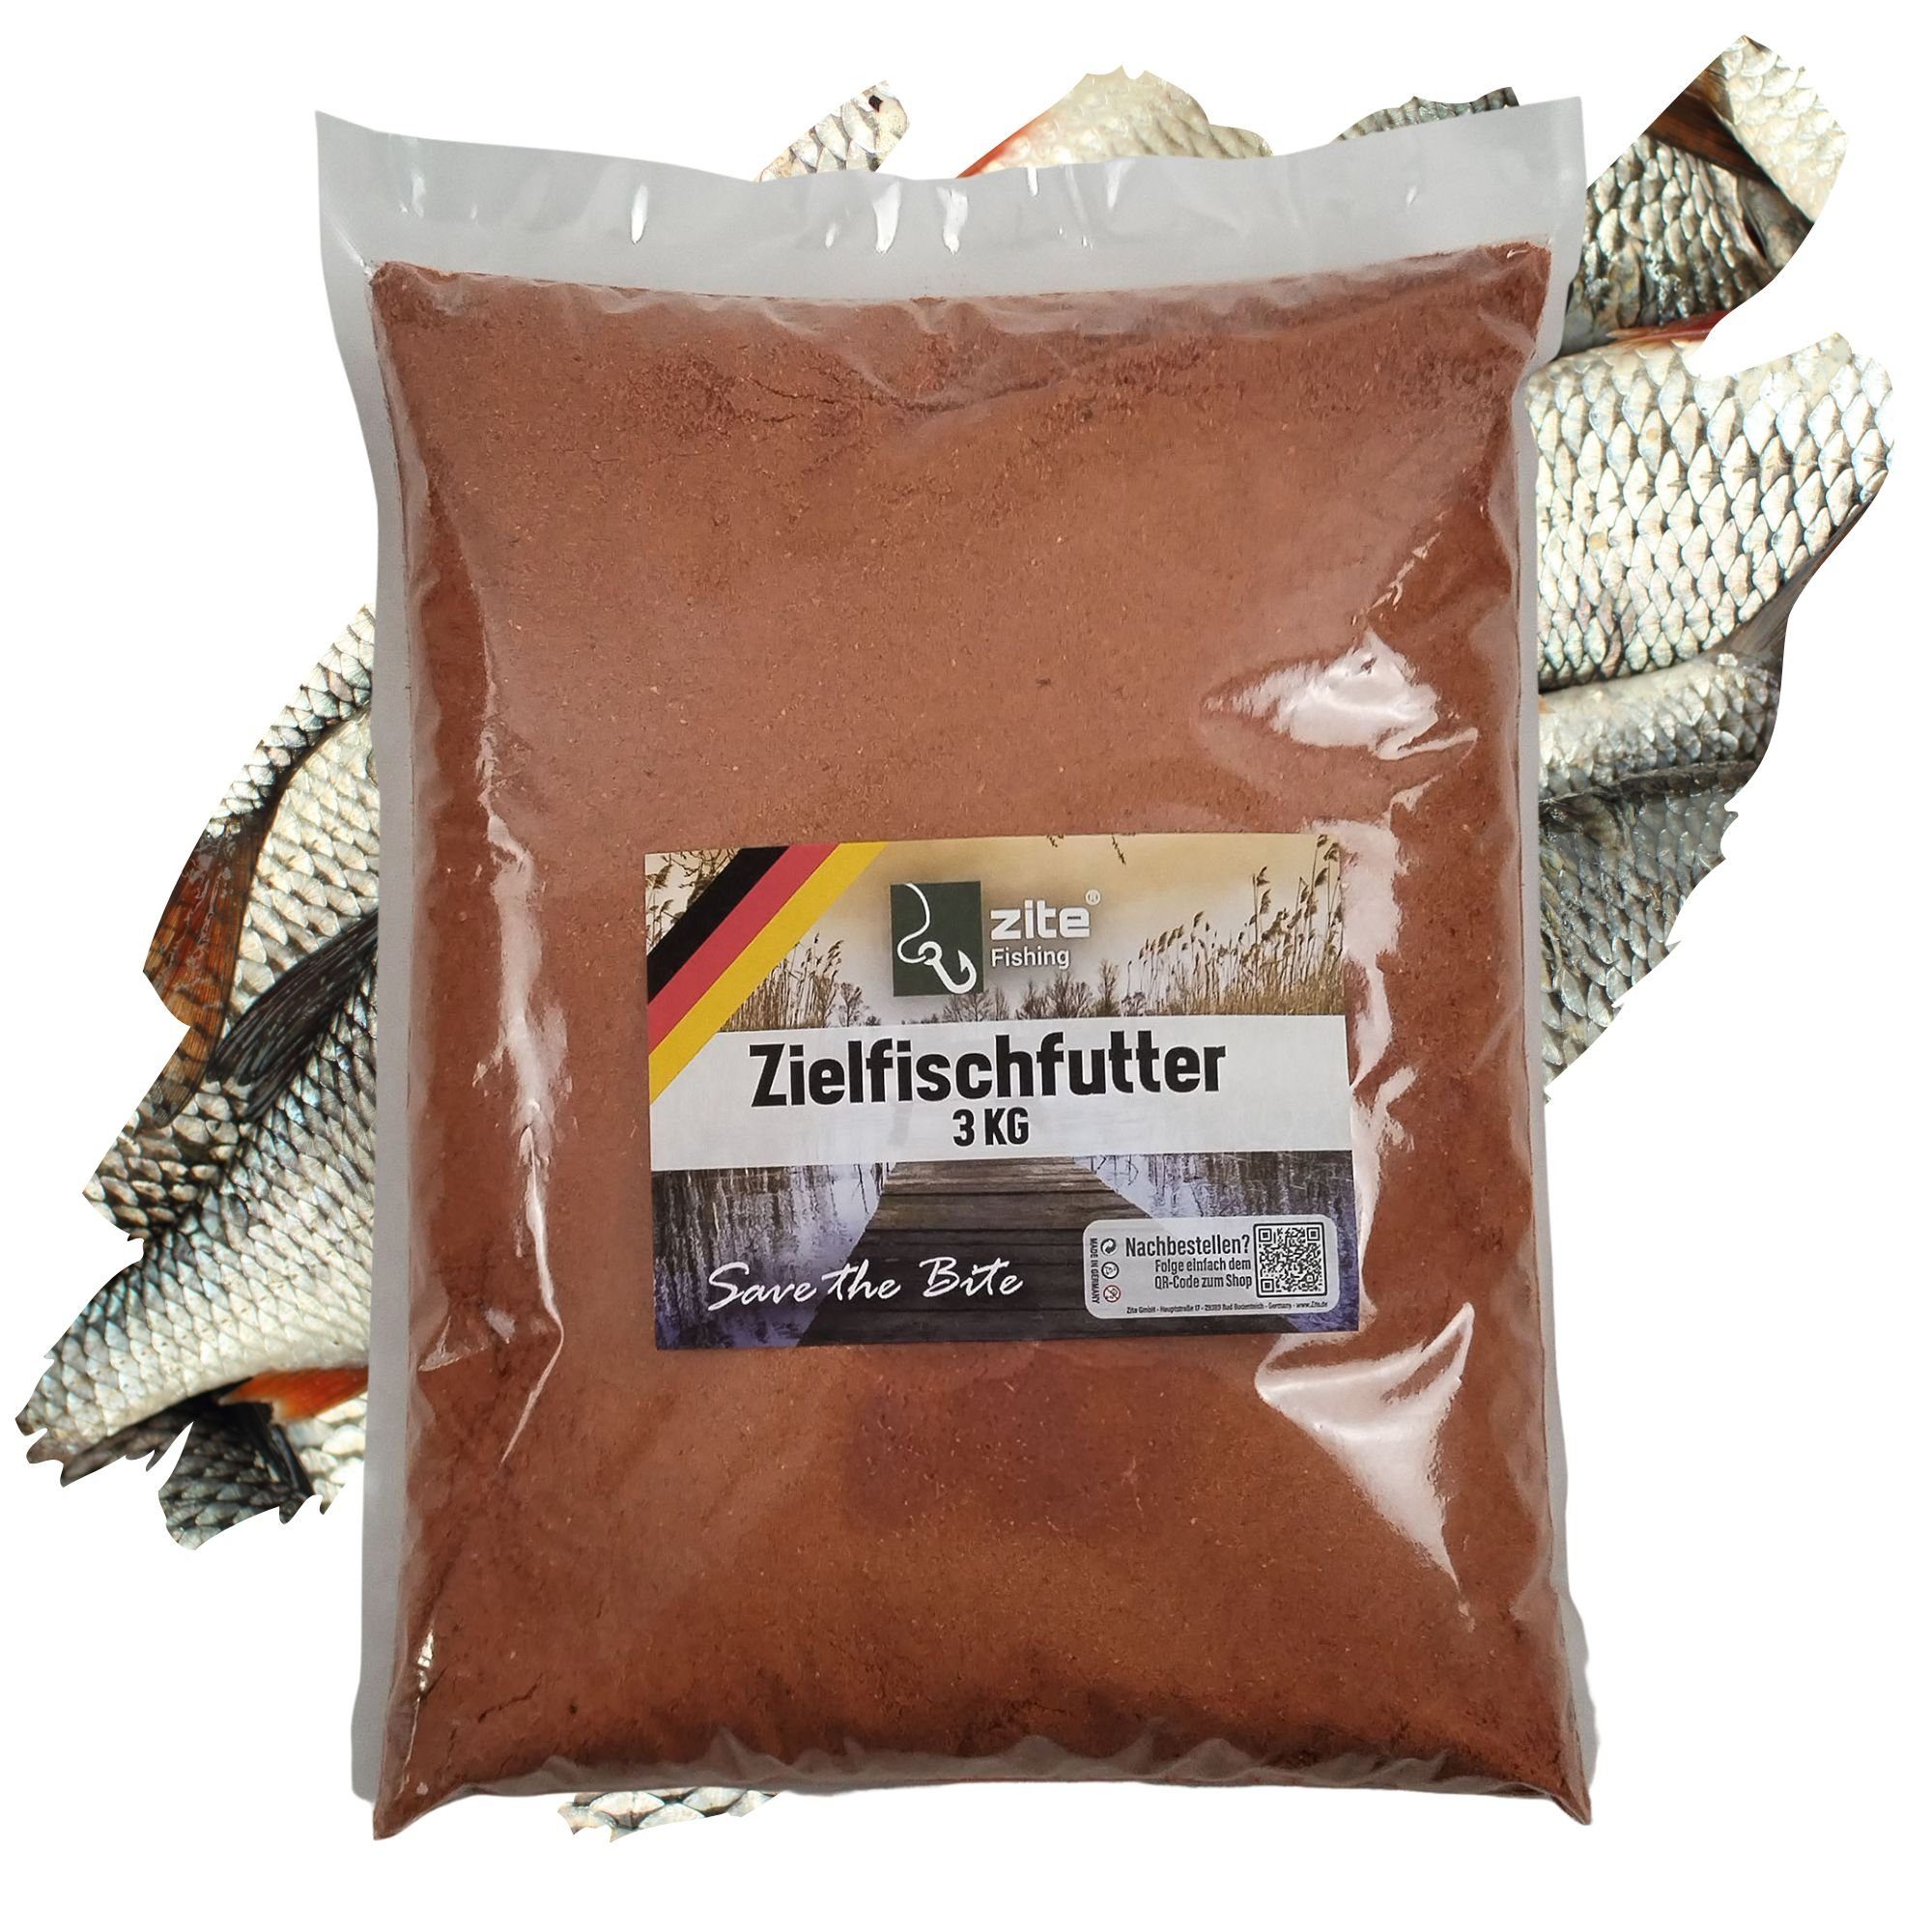 Zite Fischlockstoff Zielfischfutter Fertigmixe - 3 kg Hochattraktives Grundfutter Angeln Rotauge